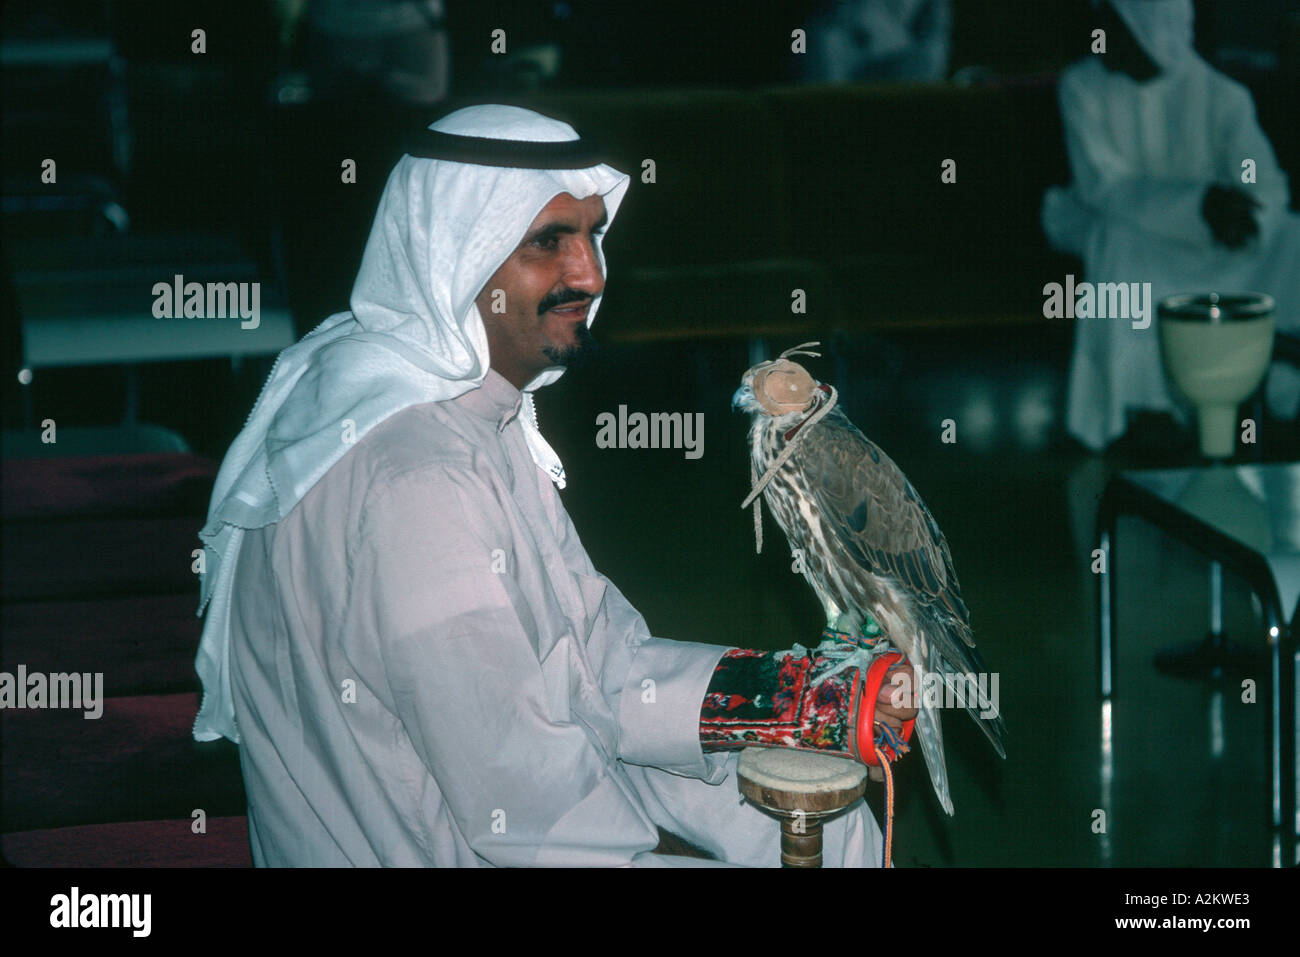 Falconer arabe avec l'aéroport de Bahreïn falcon à capuchon Moyen-orient Banque D'Images